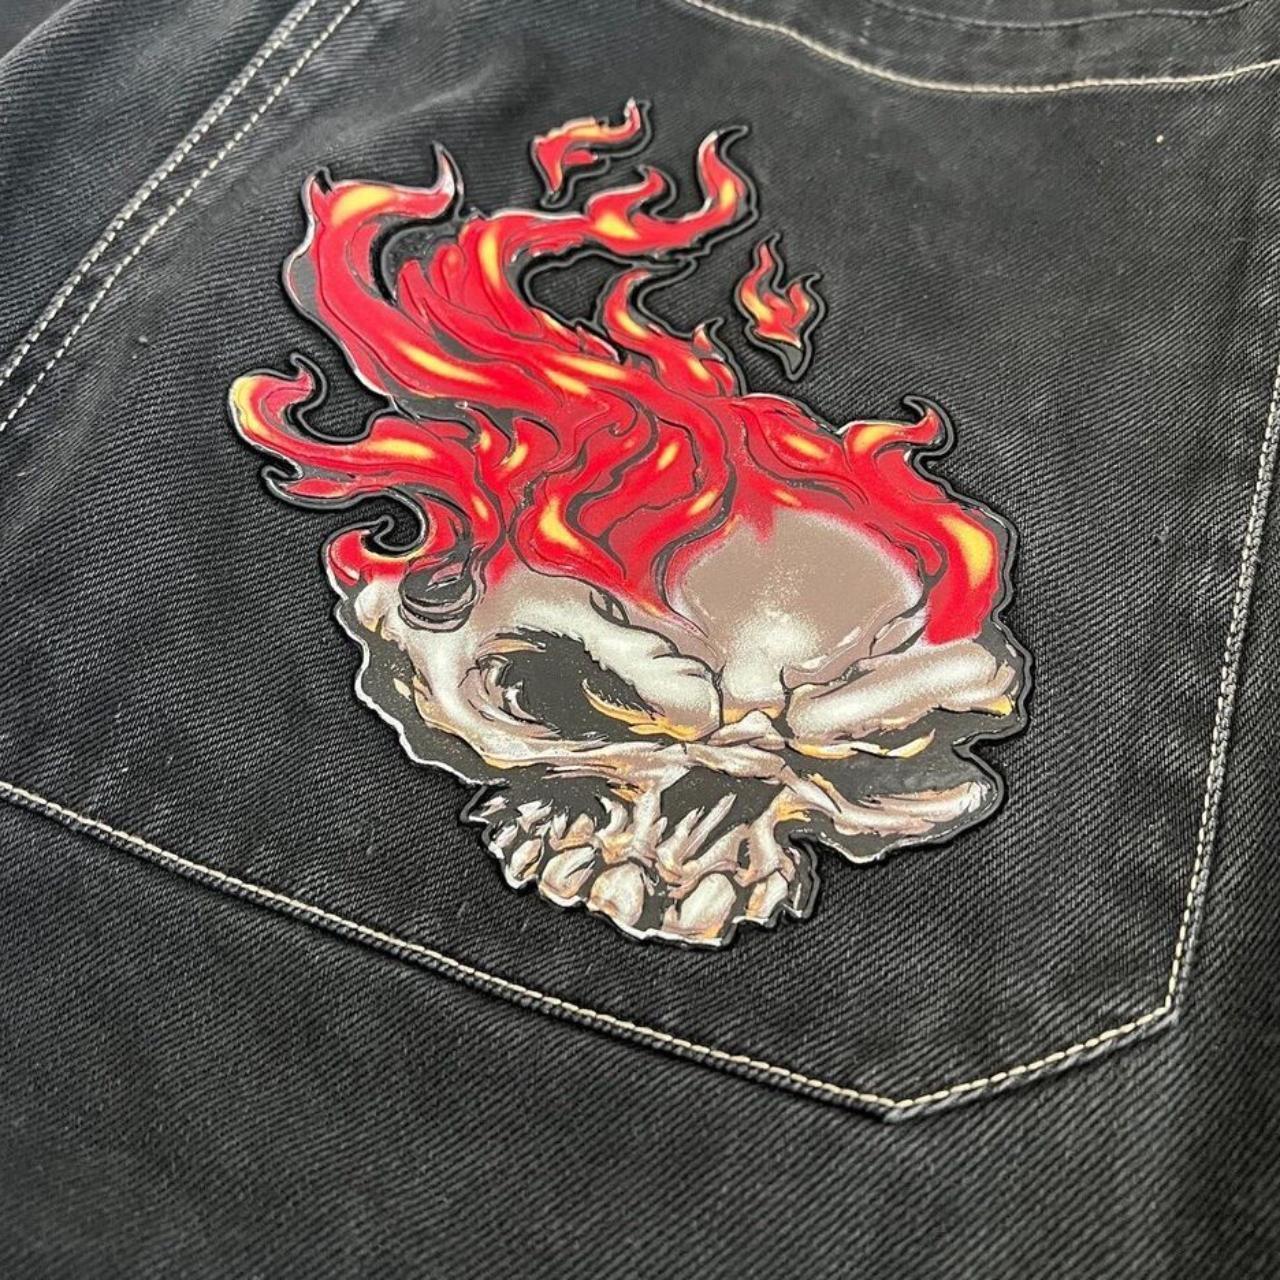 Vintage hard to find Flaming Skull Jnco Jeans 33x32 - Depop